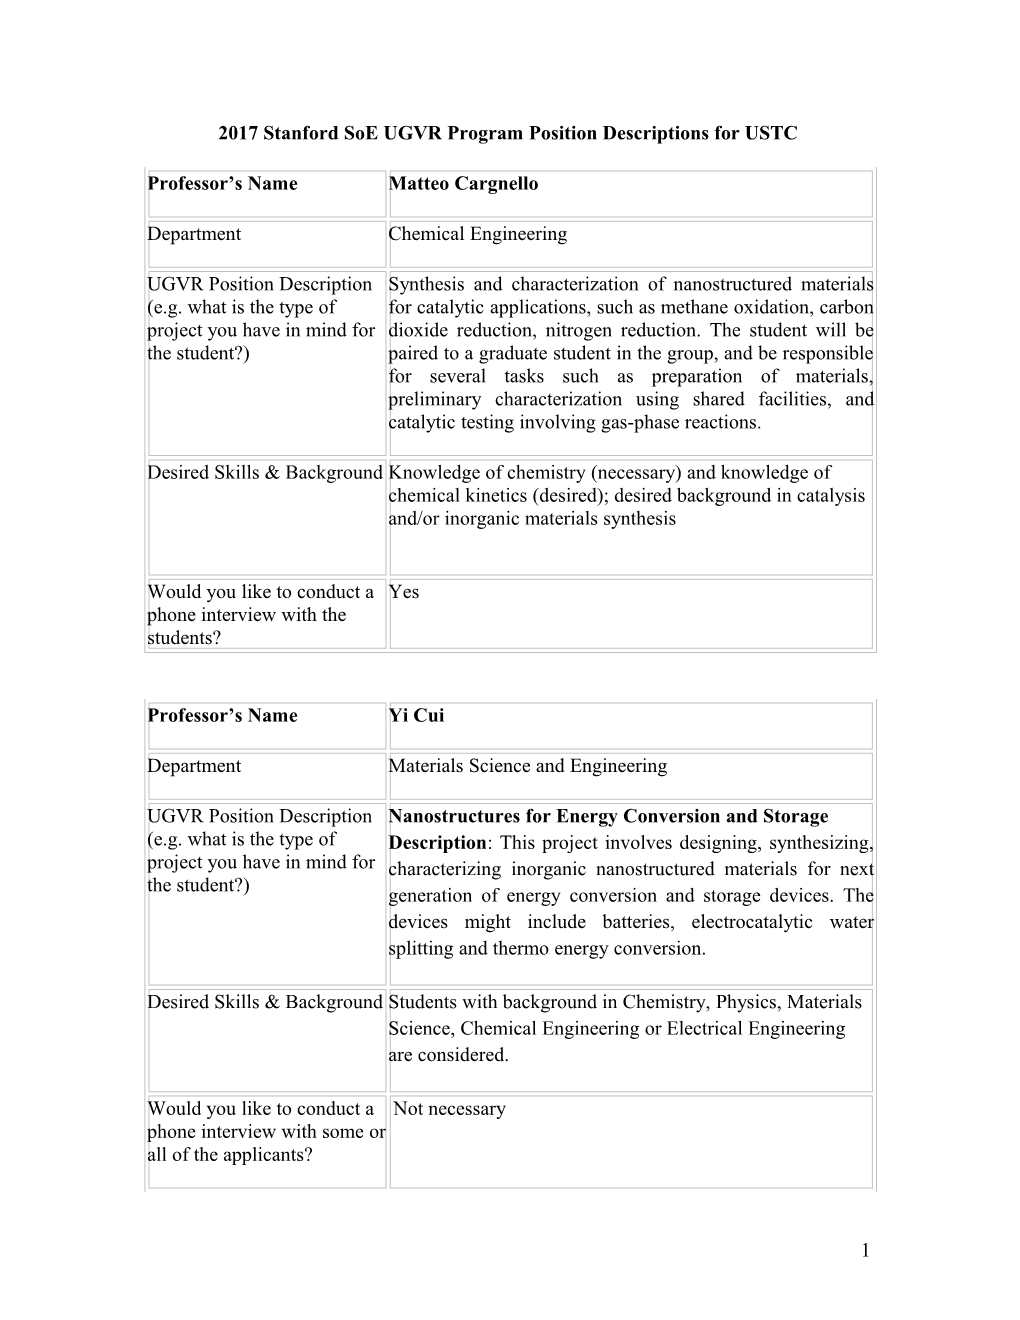 2017Stanford Soe Ugvrprogram Position Descriptions for USTC